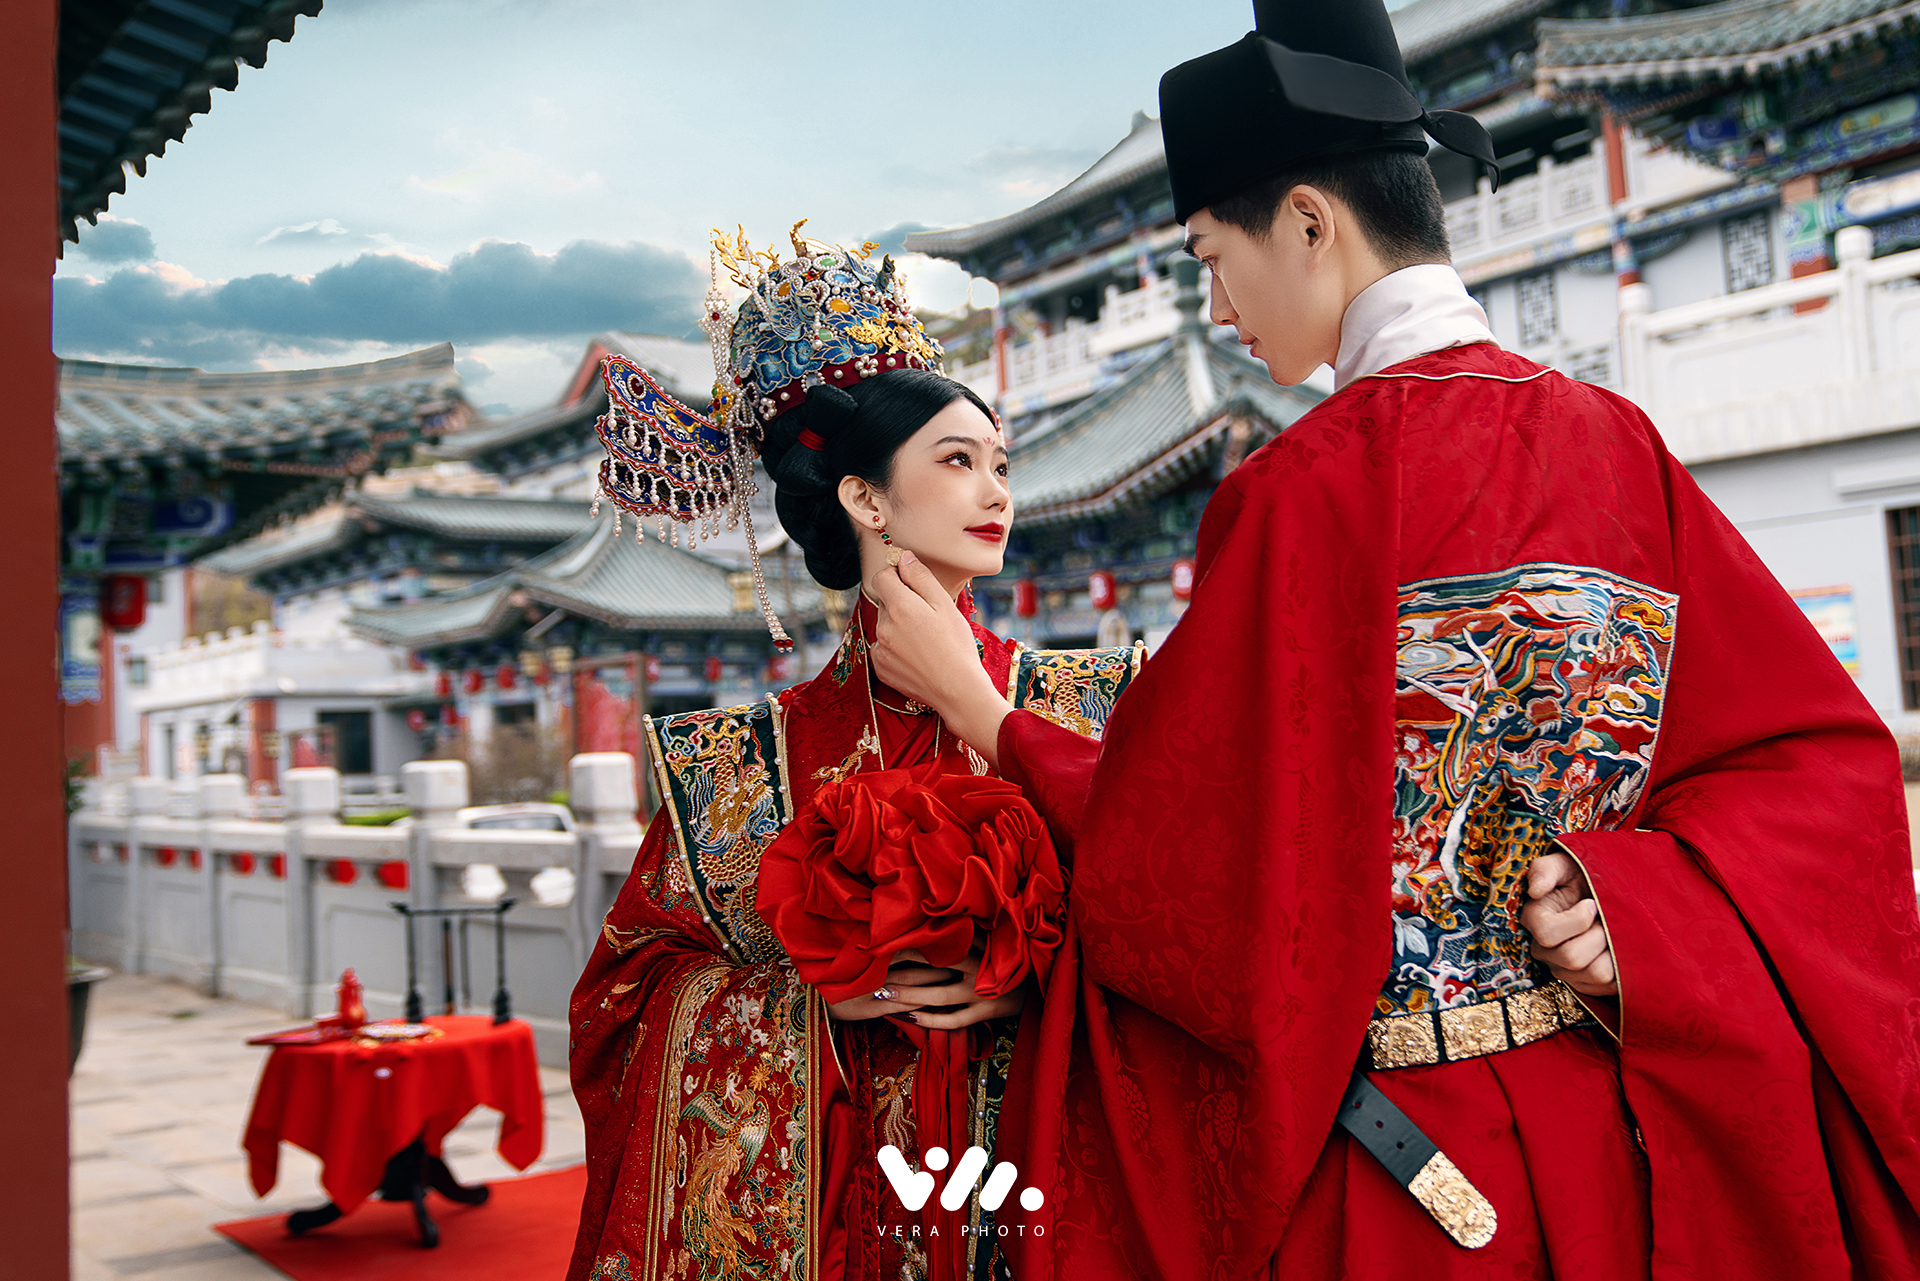 【热销】中国风/高品质/一对一中式婚纱照